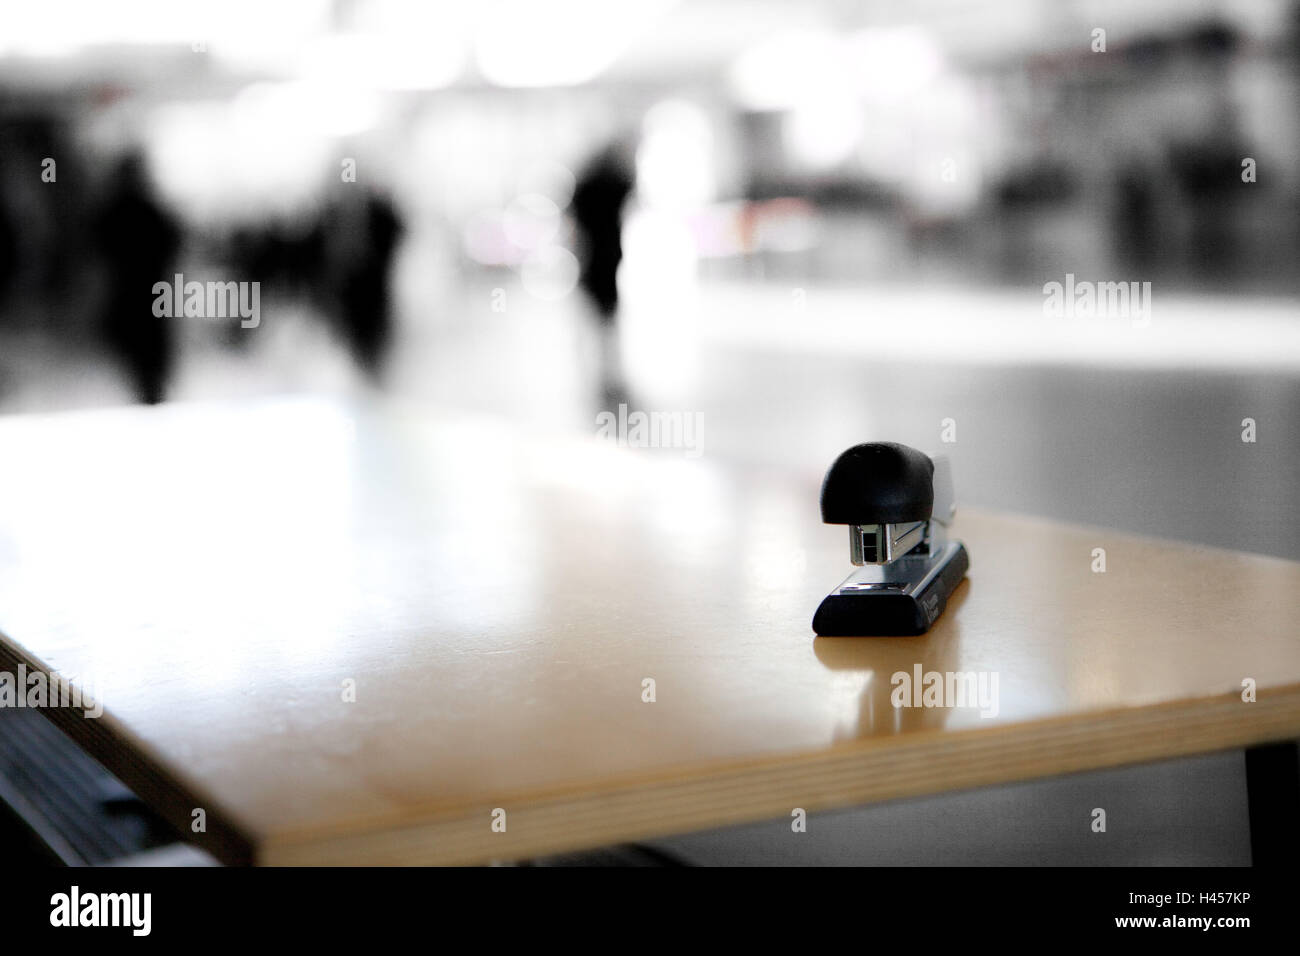 Stapler on an empty desk, Stock Photo